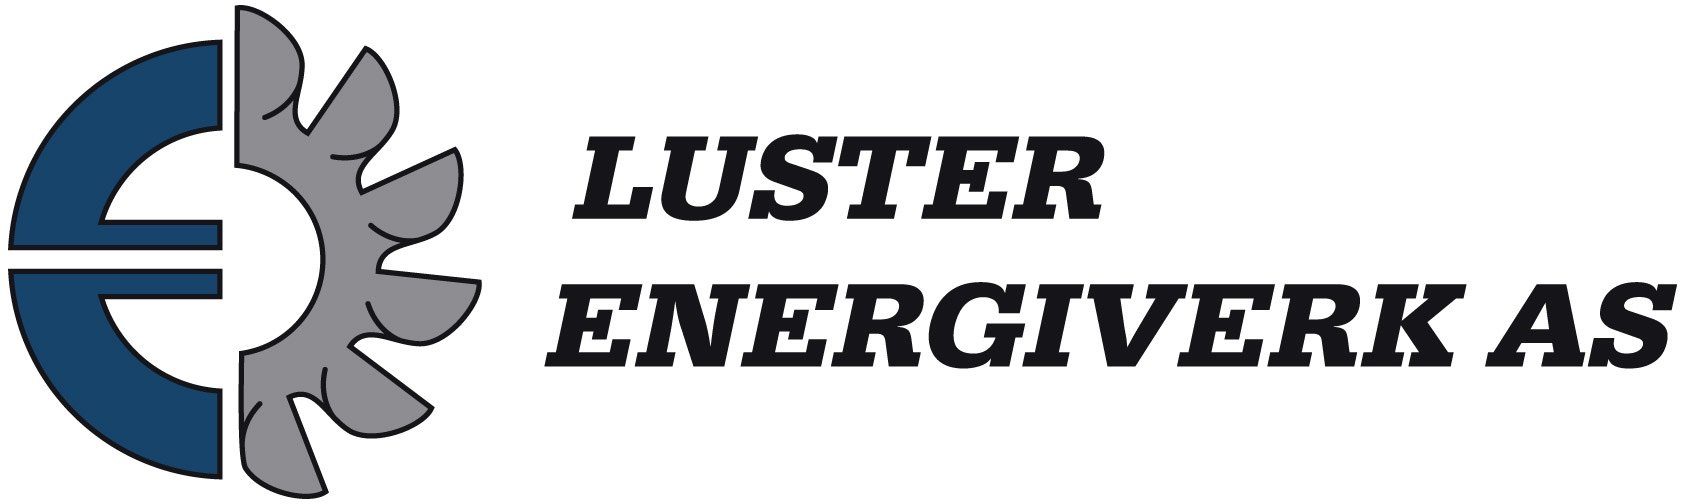 Luster_energi_logo til skjermbruk.jpg